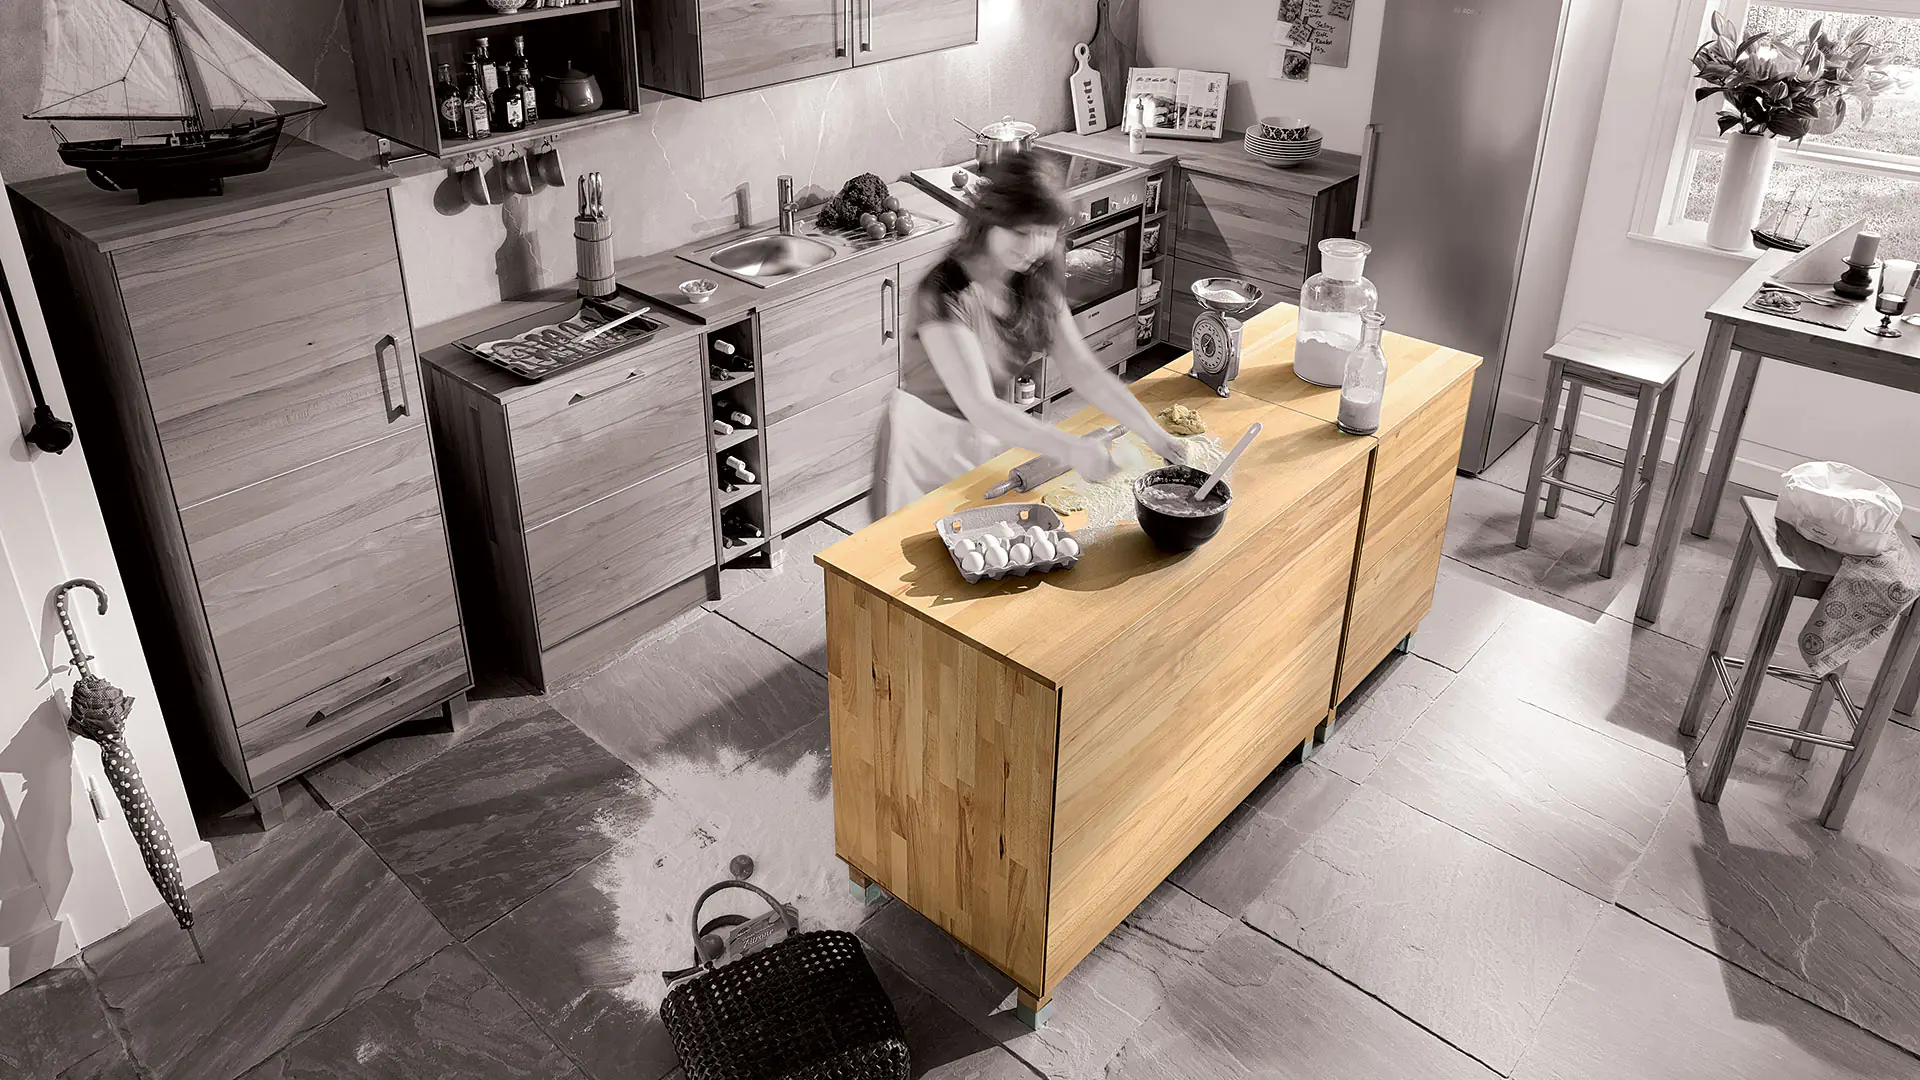 Combinatievoorbeeld voor massief houten modulaire keuken Culinara, hier met kookeilanden in 2 breedtes